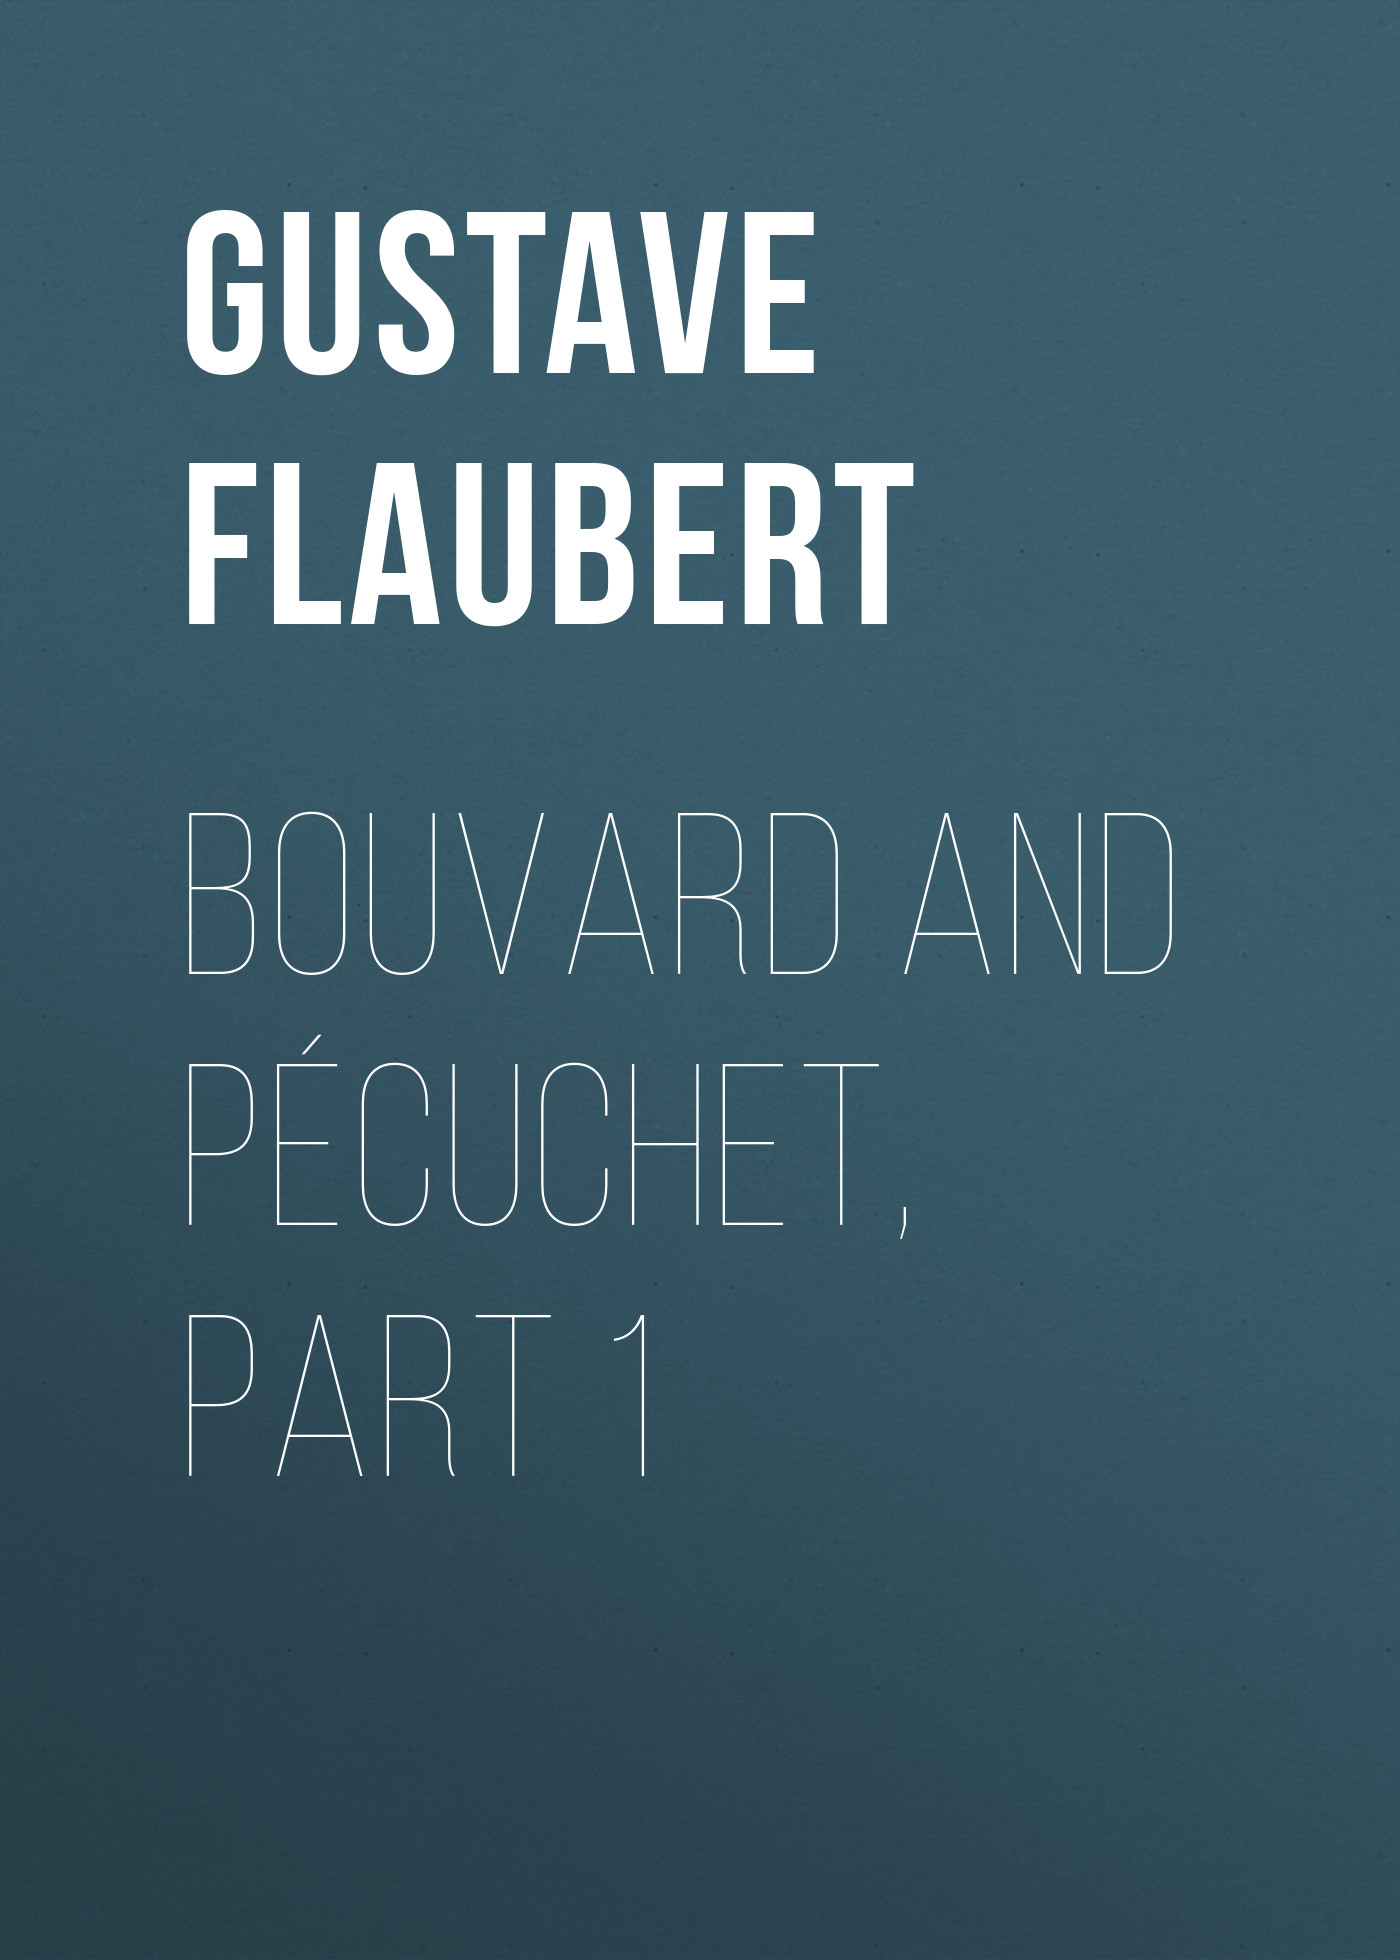 Книга Bouvard and Pécuchet, part 1  из серии , созданная Gustave Flaubert, может относится к жанру Зарубежная старинная литература, Зарубежная классика. Стоимость электронной книги Bouvard and Pécuchet, part 1  с идентификатором 25203223 составляет 0 руб.